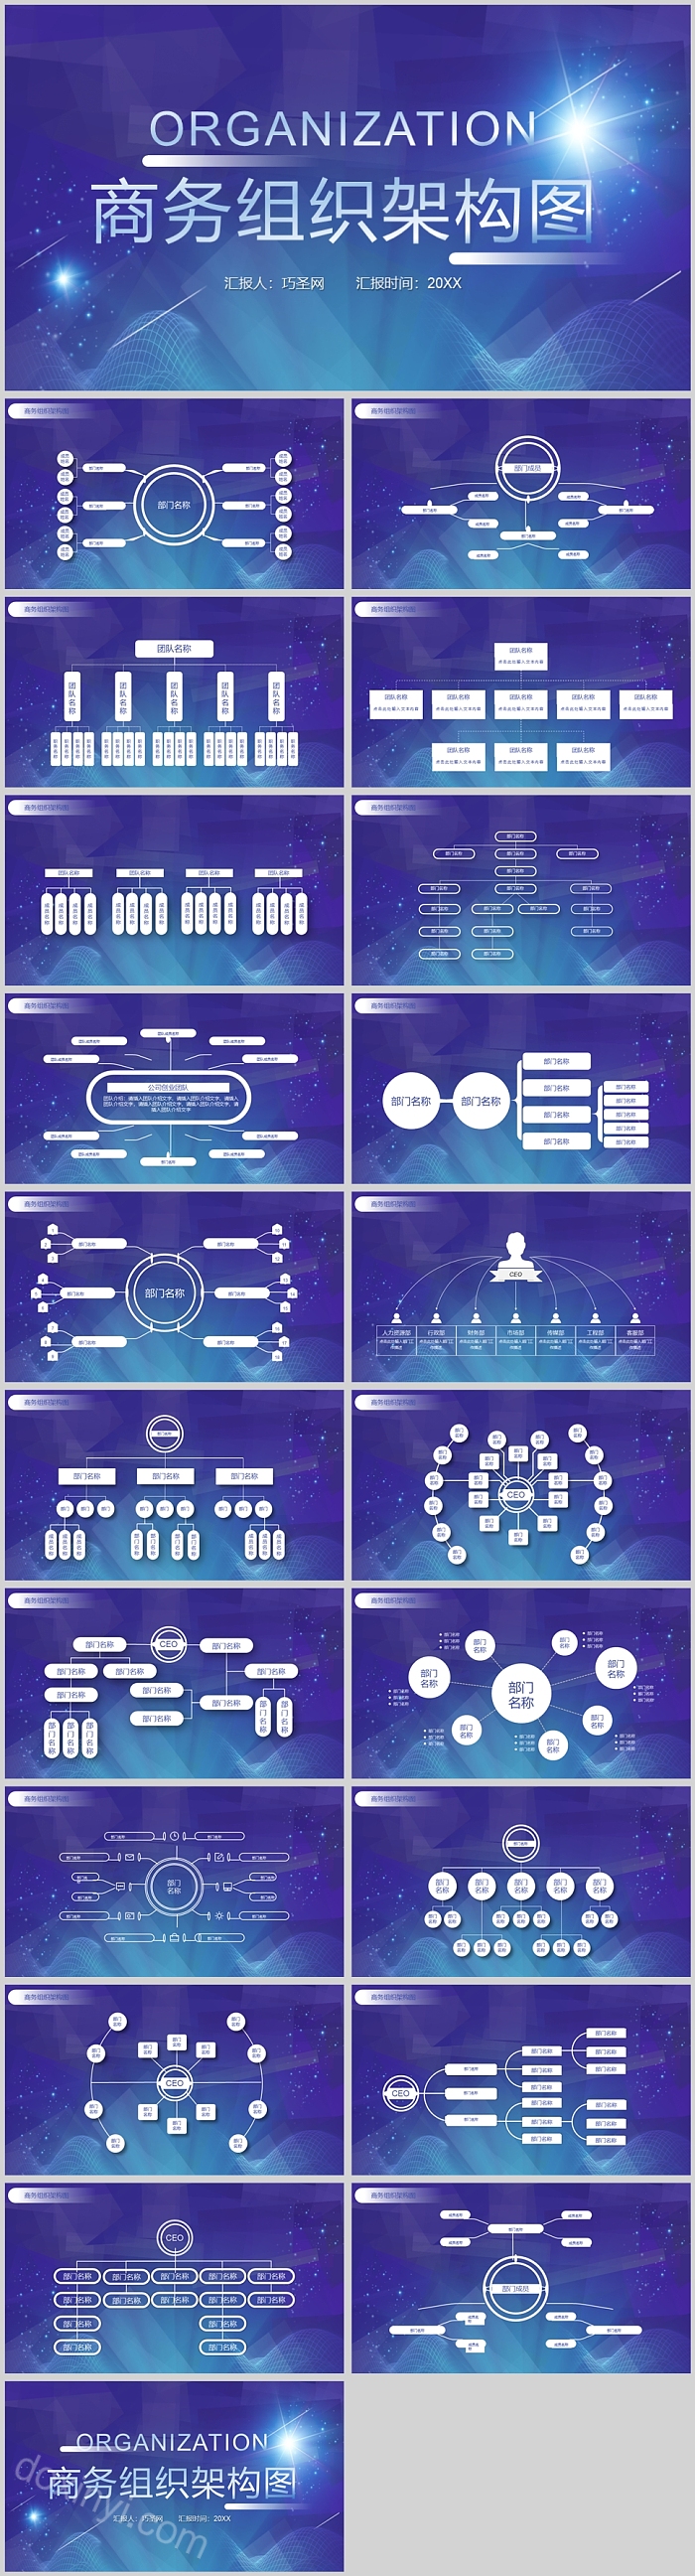 蓝色商务商务组织架构图PPT模板